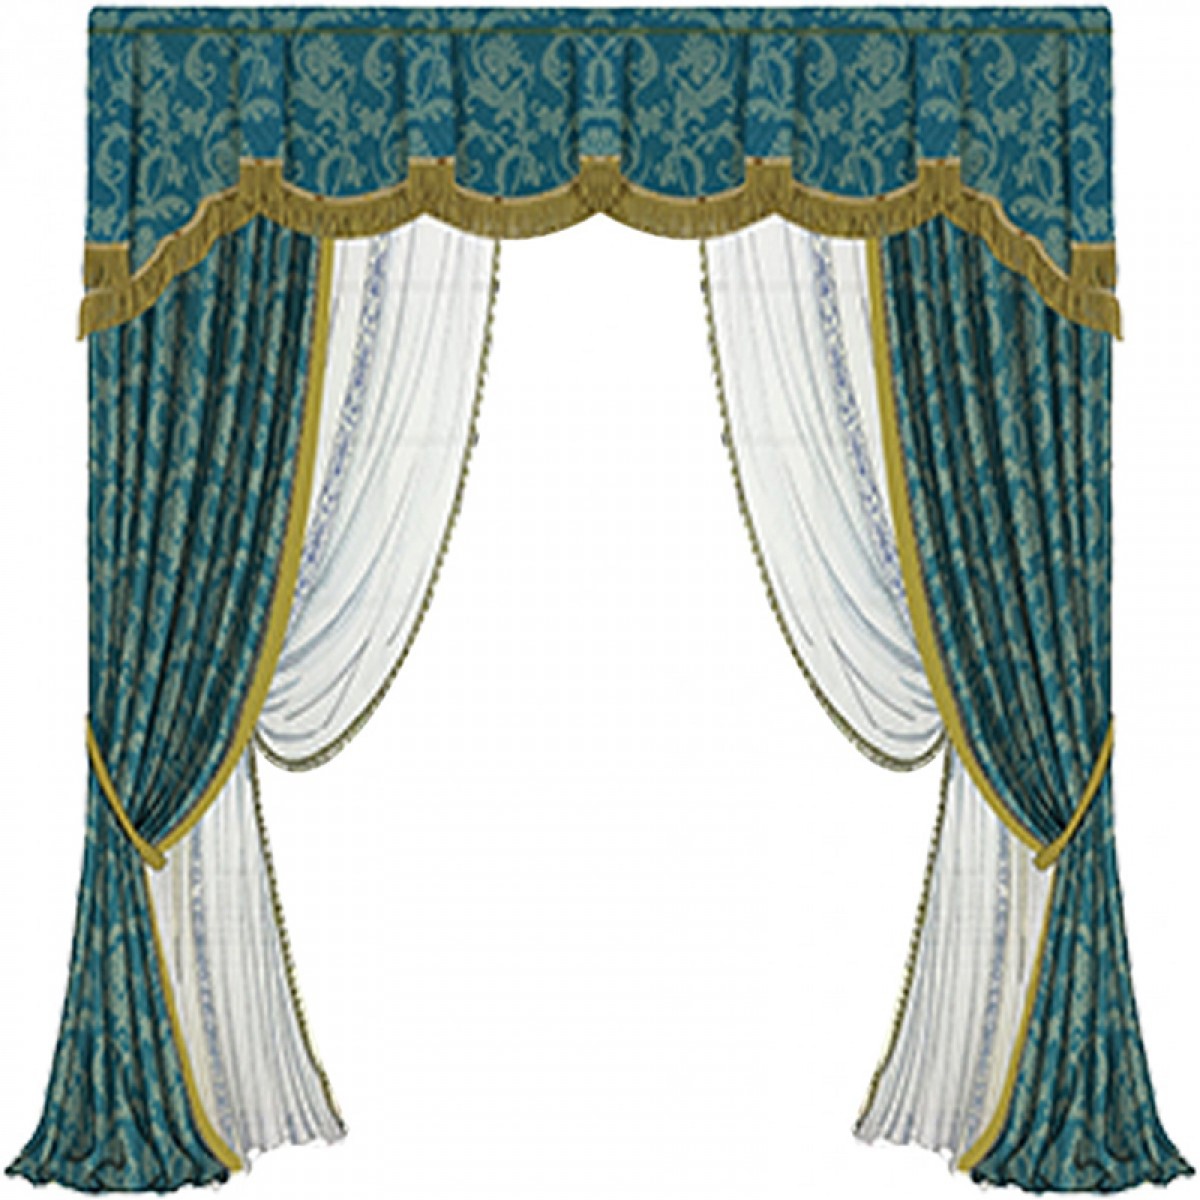 御纺软装 会客厅 展厅 办公室 窗帘设计 一个2米的窗户，要用4.6米左右的布 ，皱褶倍数是2.3倍